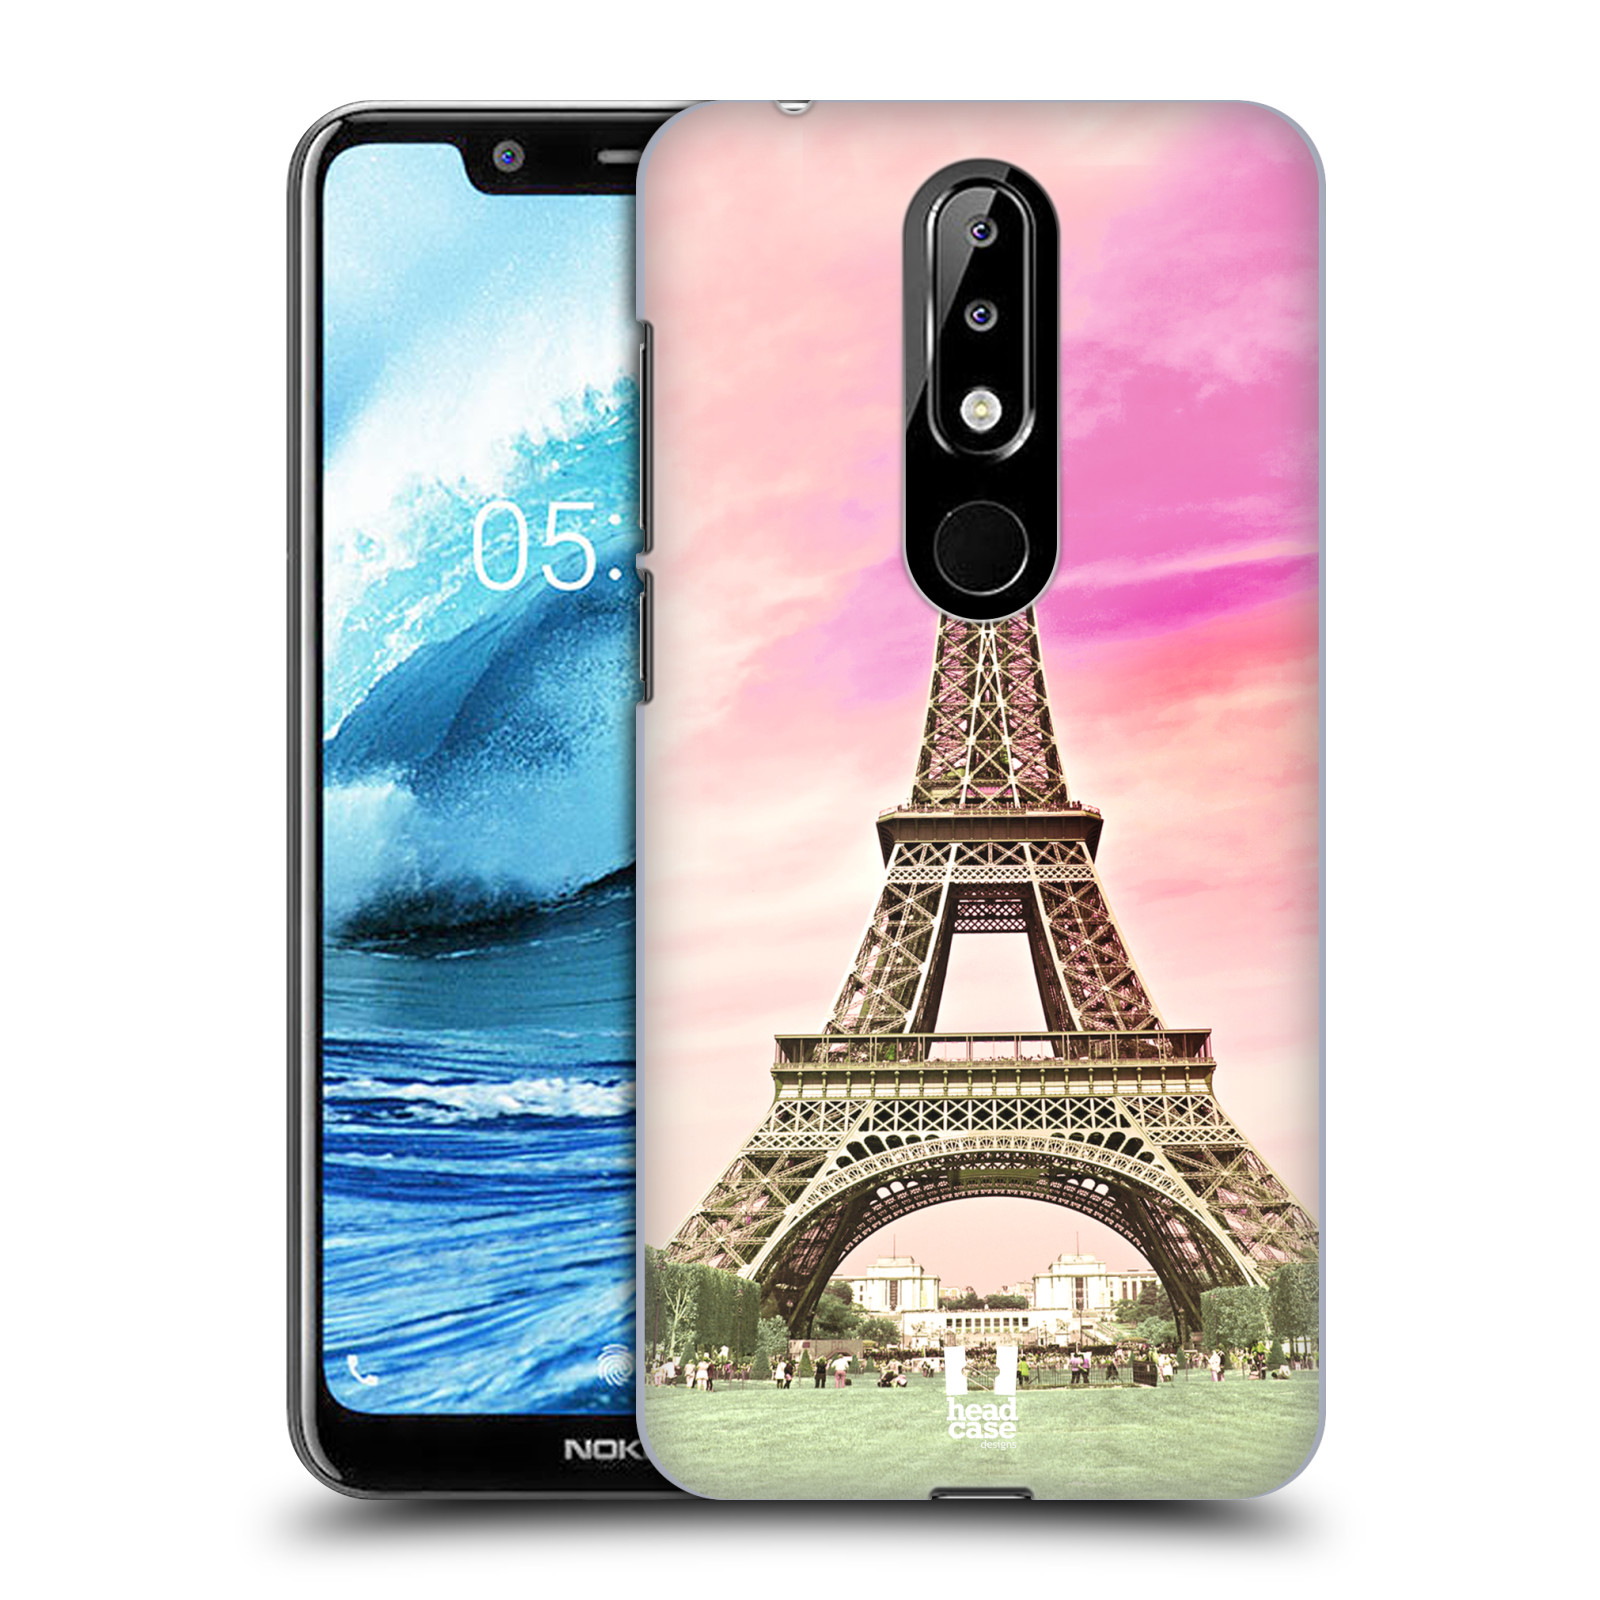 Pouzdro na mobil Nokia 5.1 PLUS - HEAD CASE - historická místa Eiffelova věž Paříž